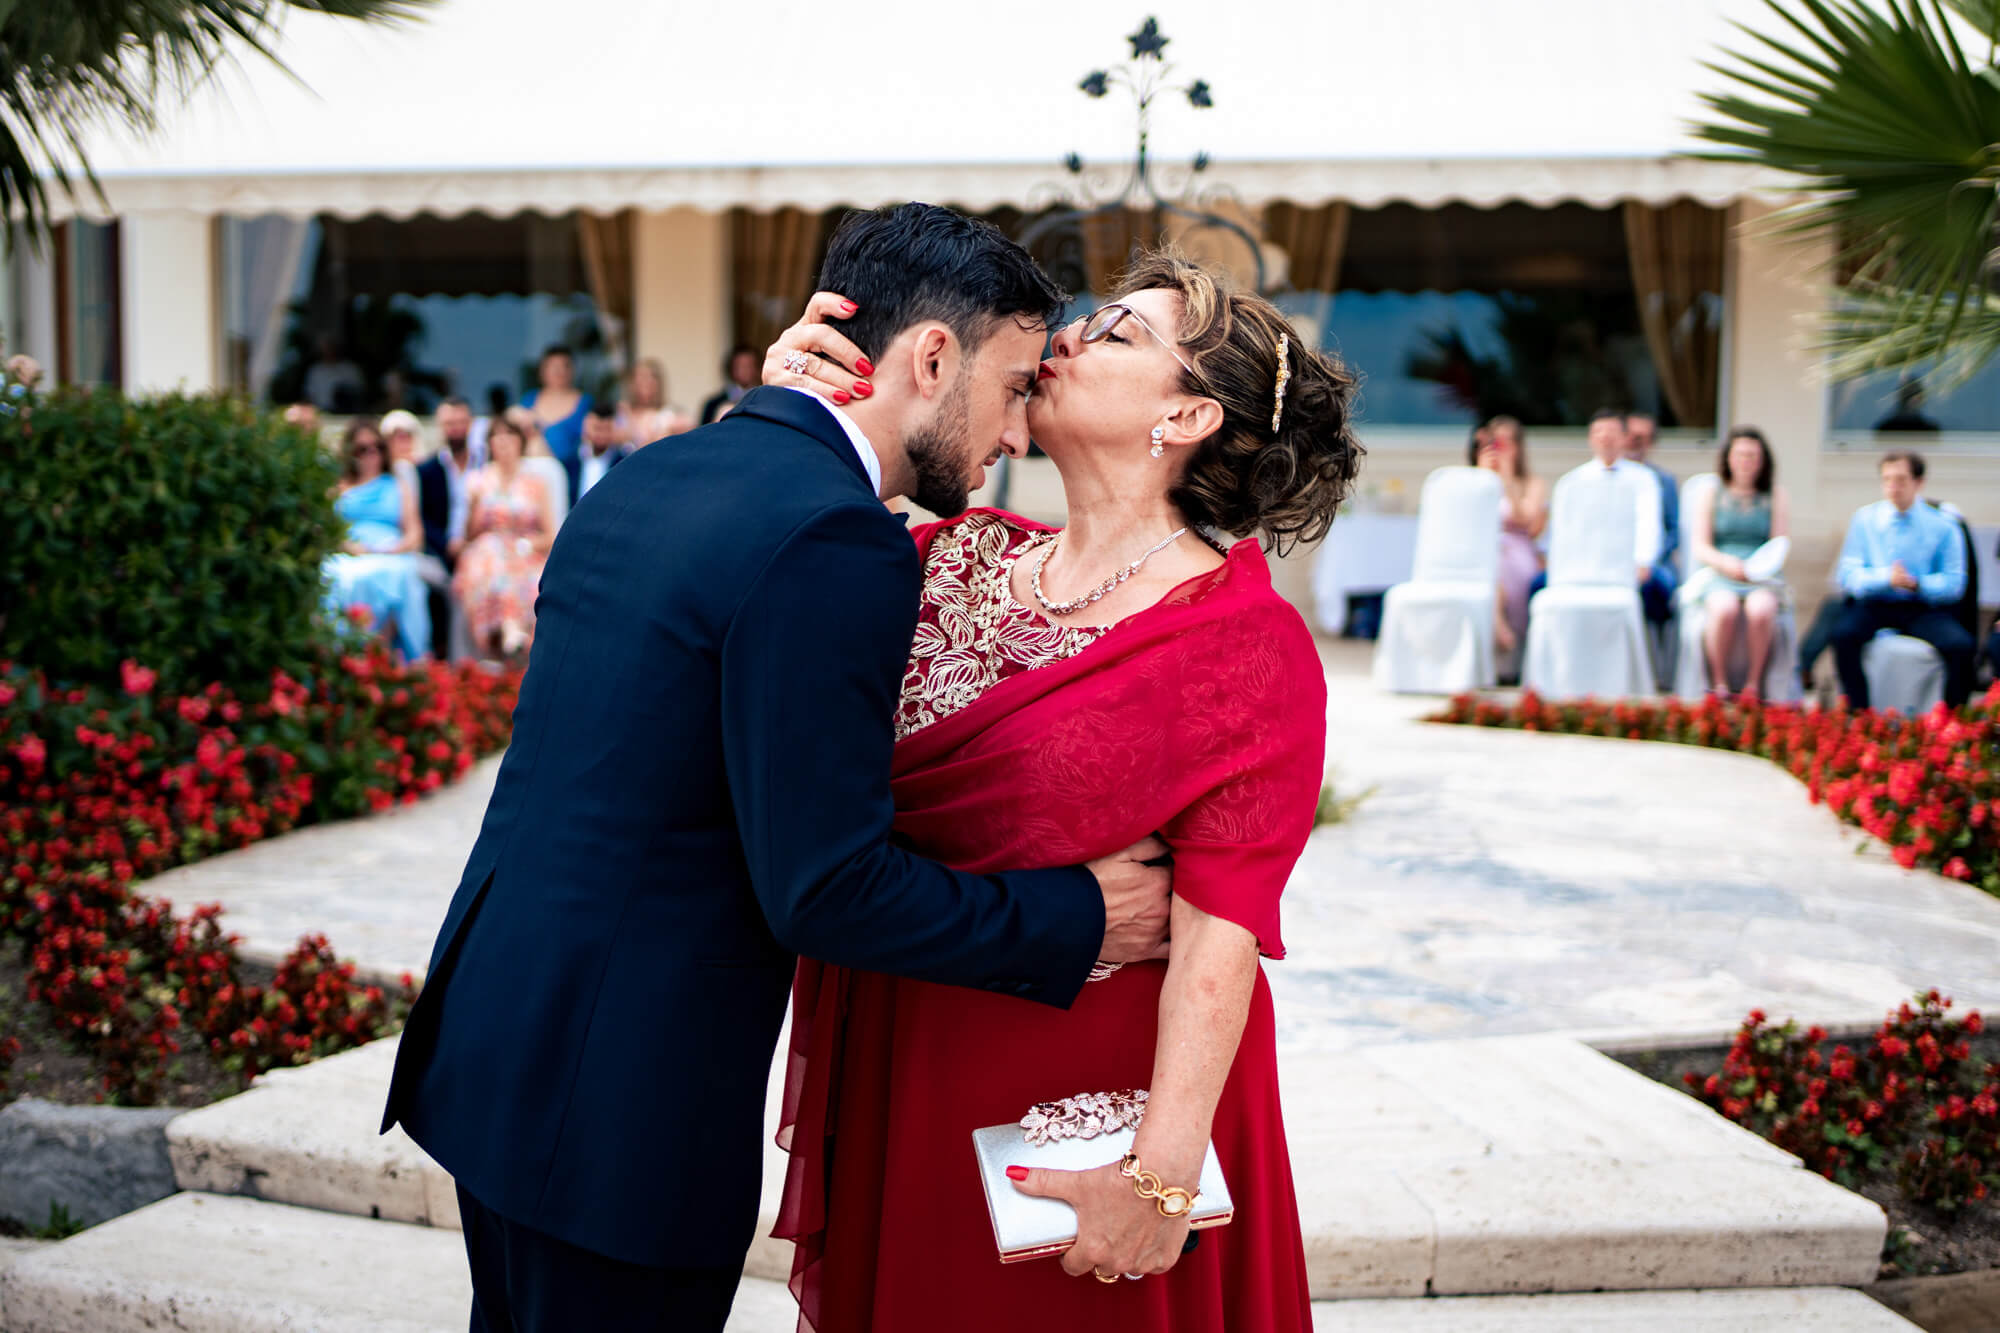 la mamma da un bacio sulla fronte allo sposo dopo l'ingresso sulla terrazza dell'hotel royal dove è stato celebrato il matrimonio.